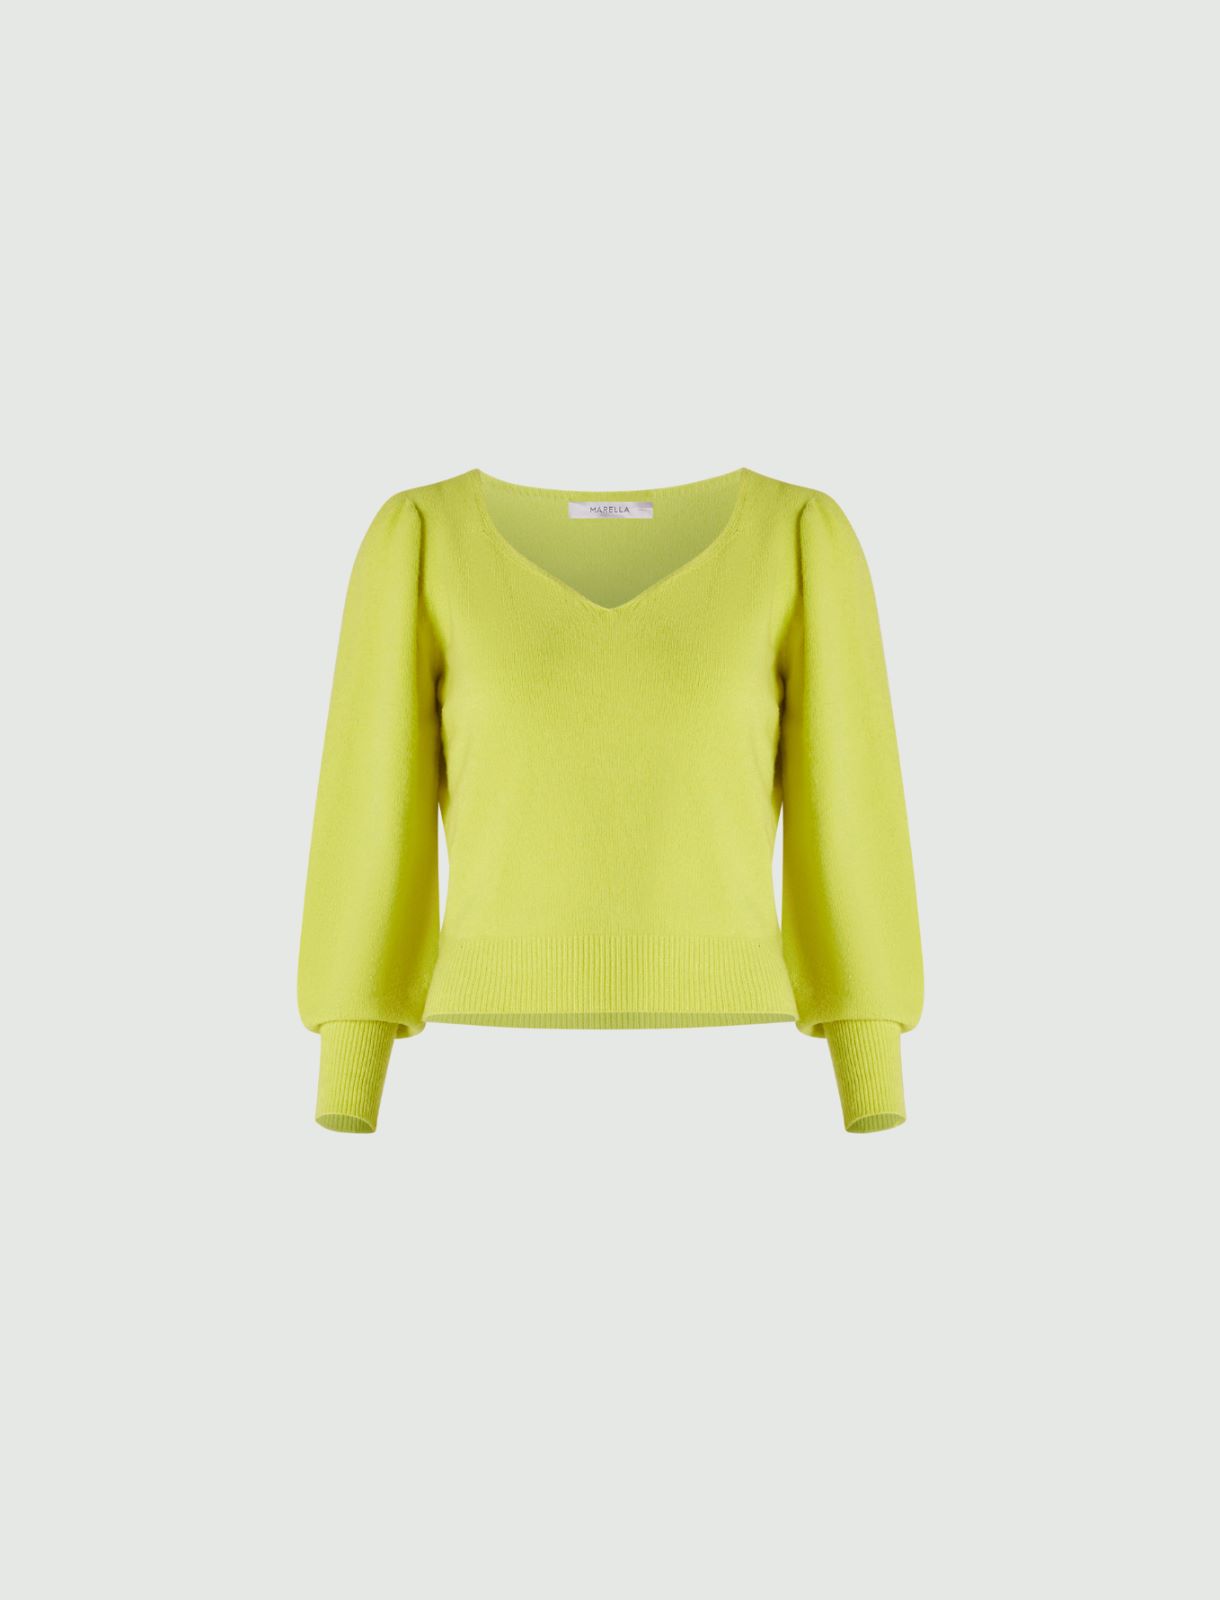 Pullover mit herzförmigem Ausschnitt - Zitrone - Marella - 5